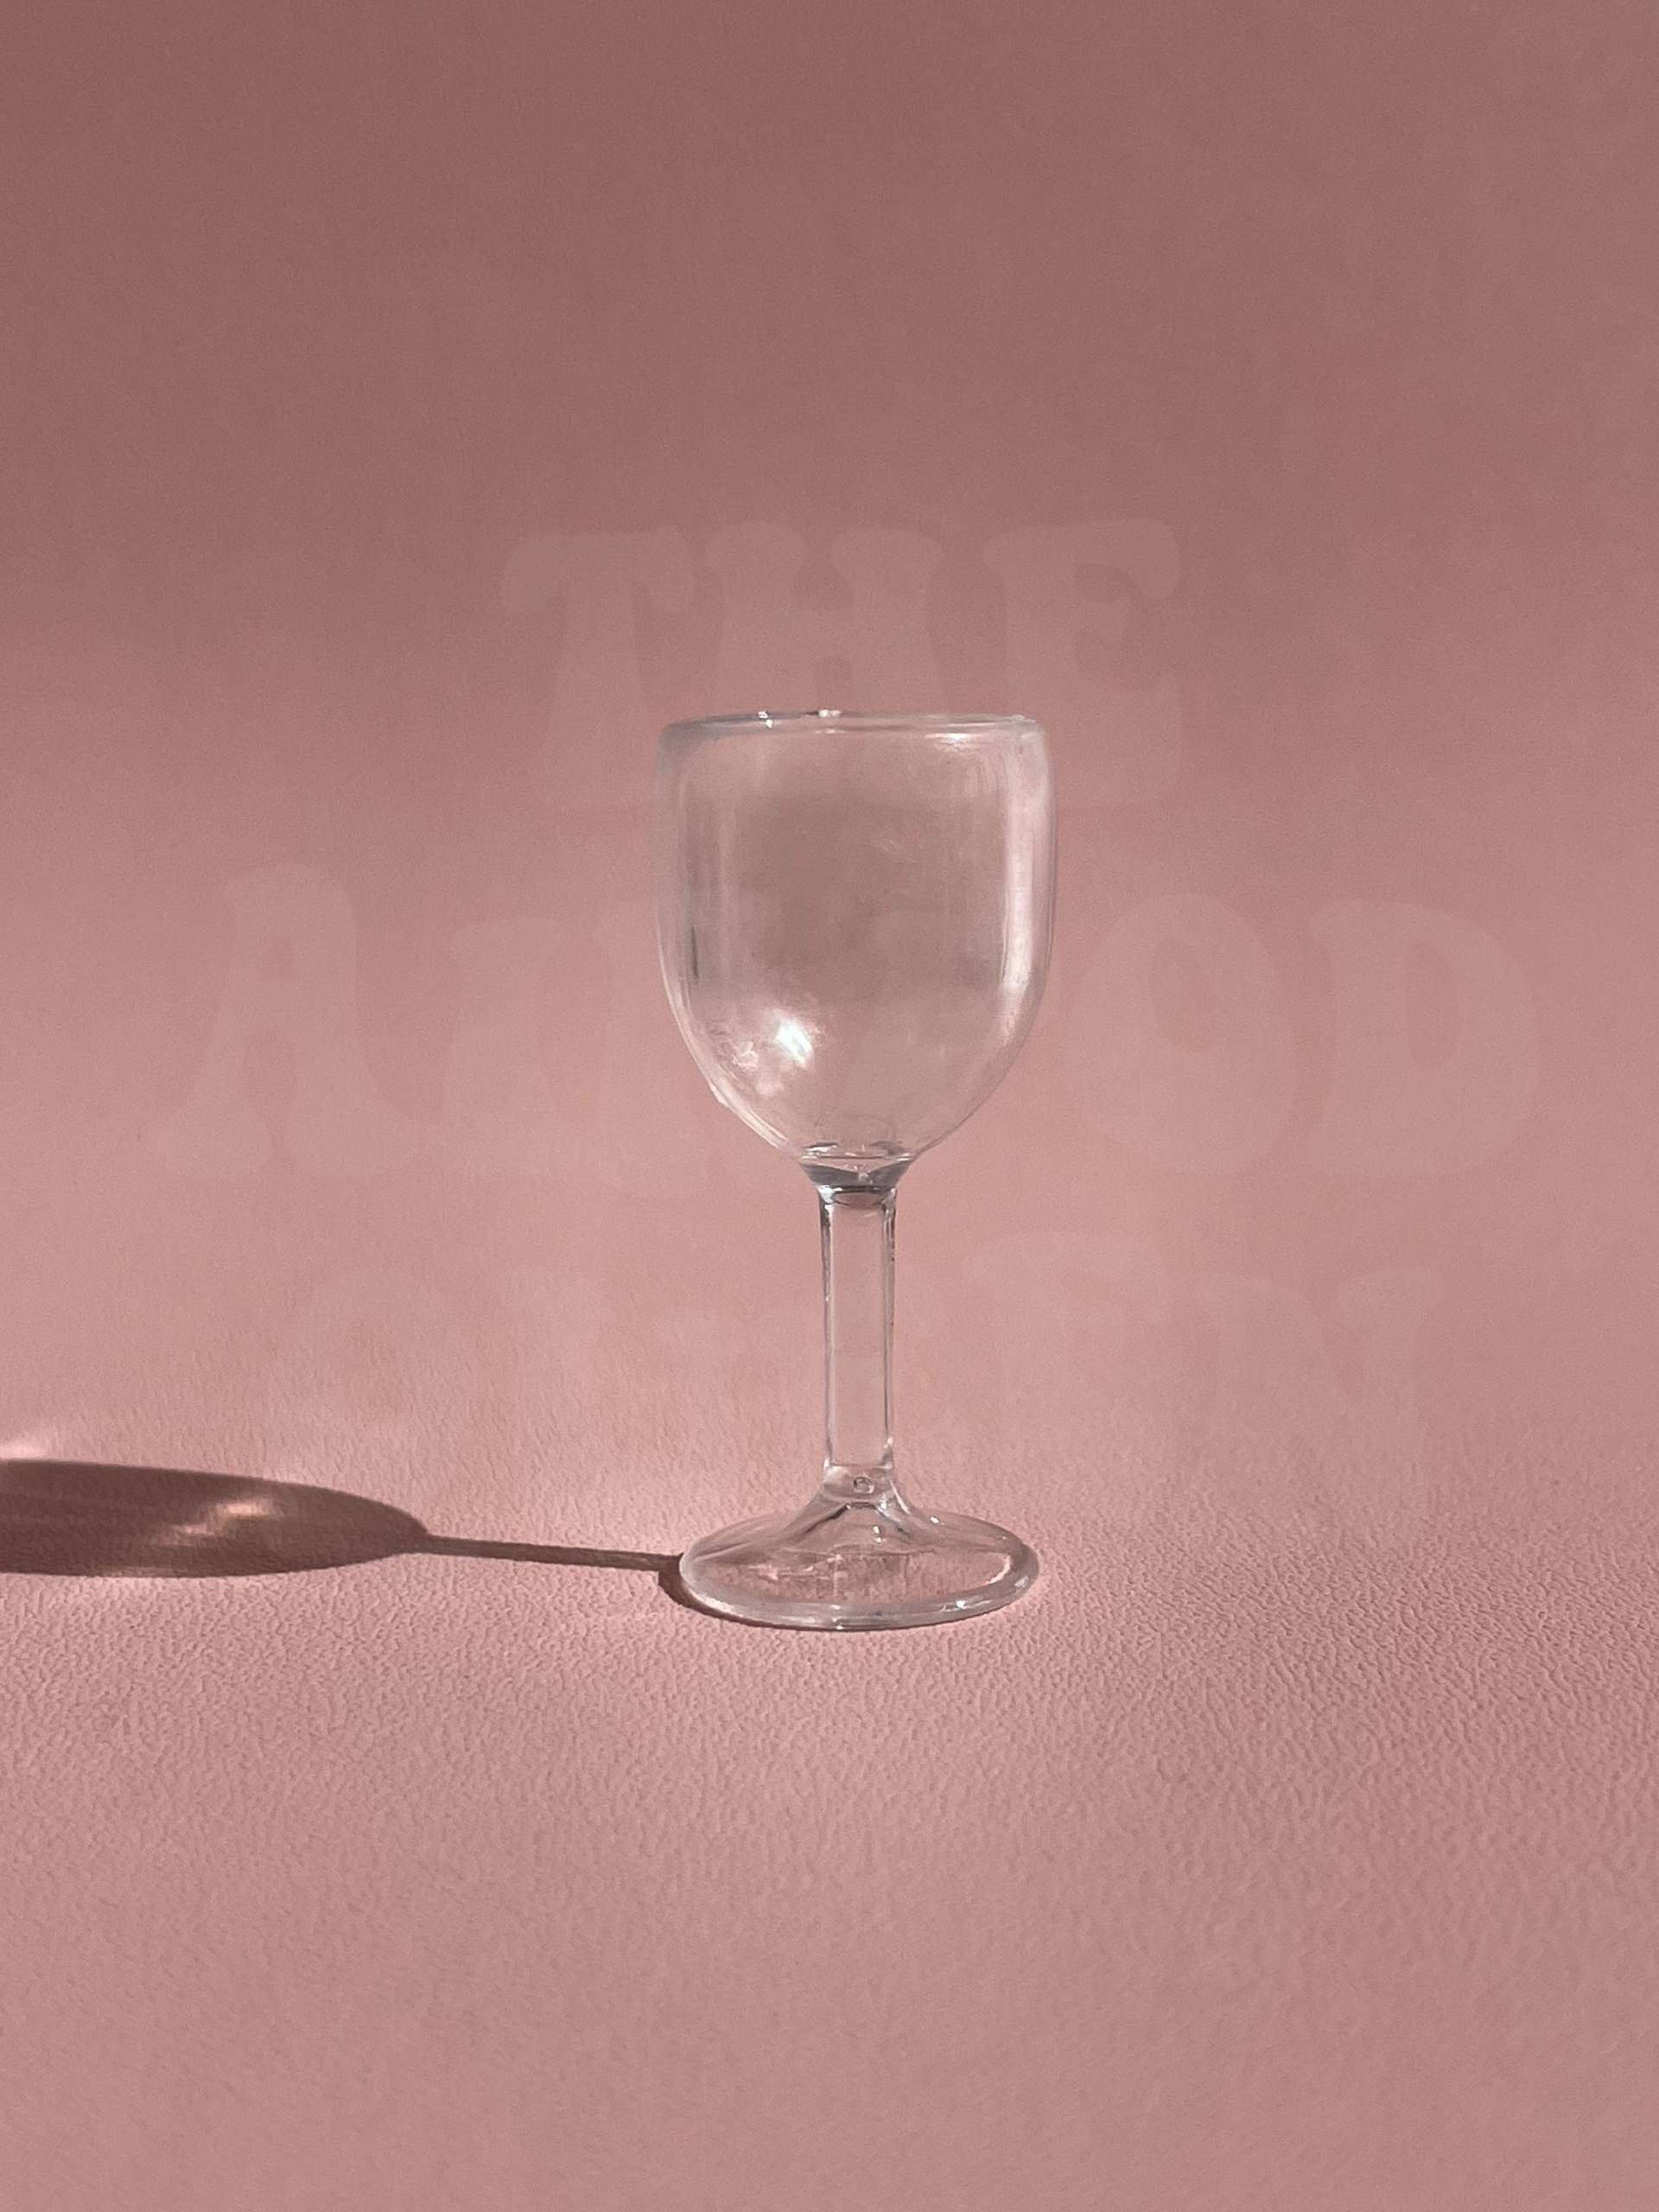 20 Mini Weingläser | Margarita Tasse Diy Schlüsselanhänger Weinglas Blanko Miniatur Essen Lebensmittel Schlüsselanhänger von TheAirpodQueen